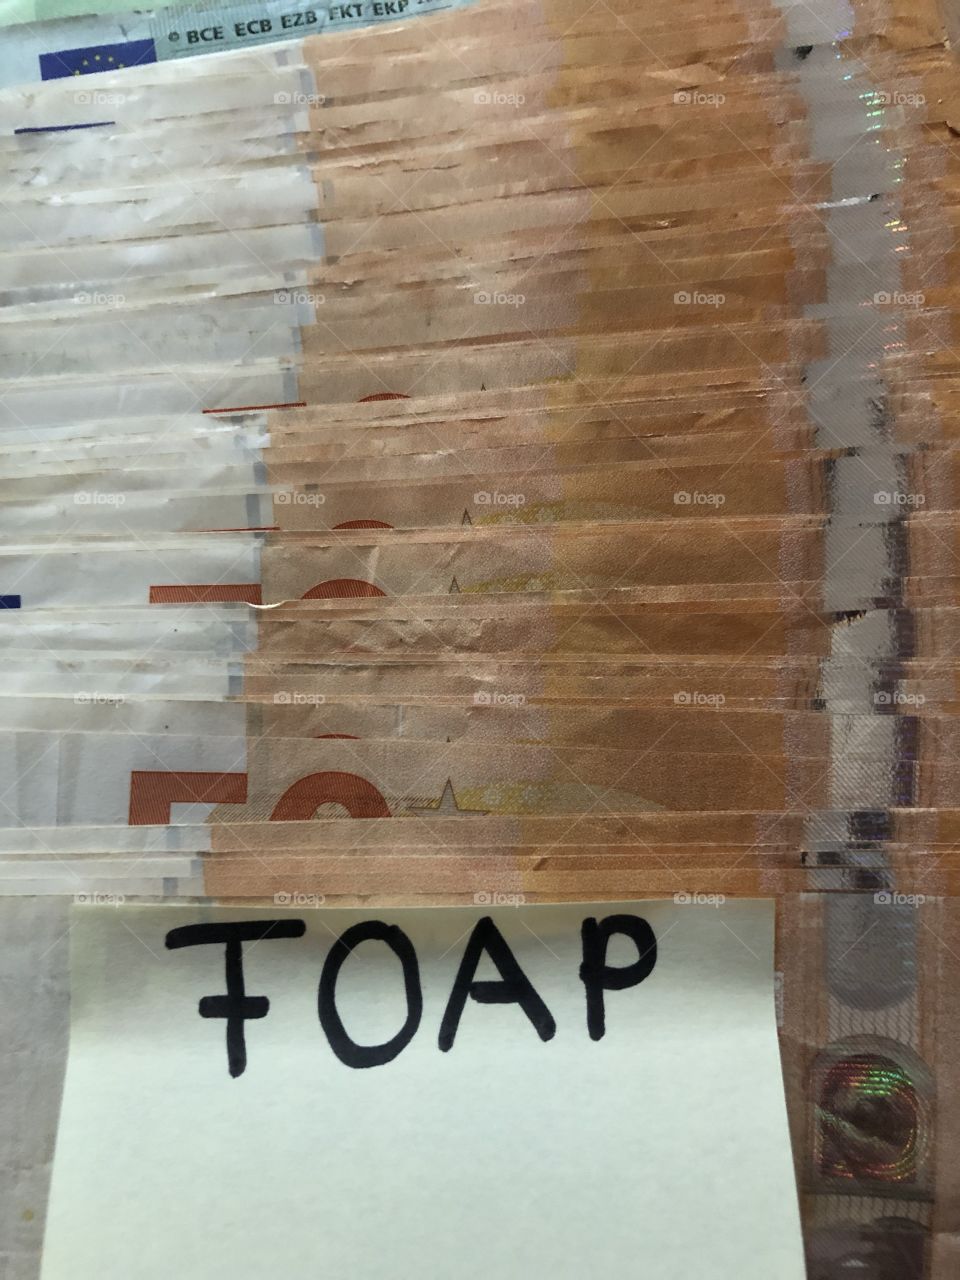 Foap Money 😊